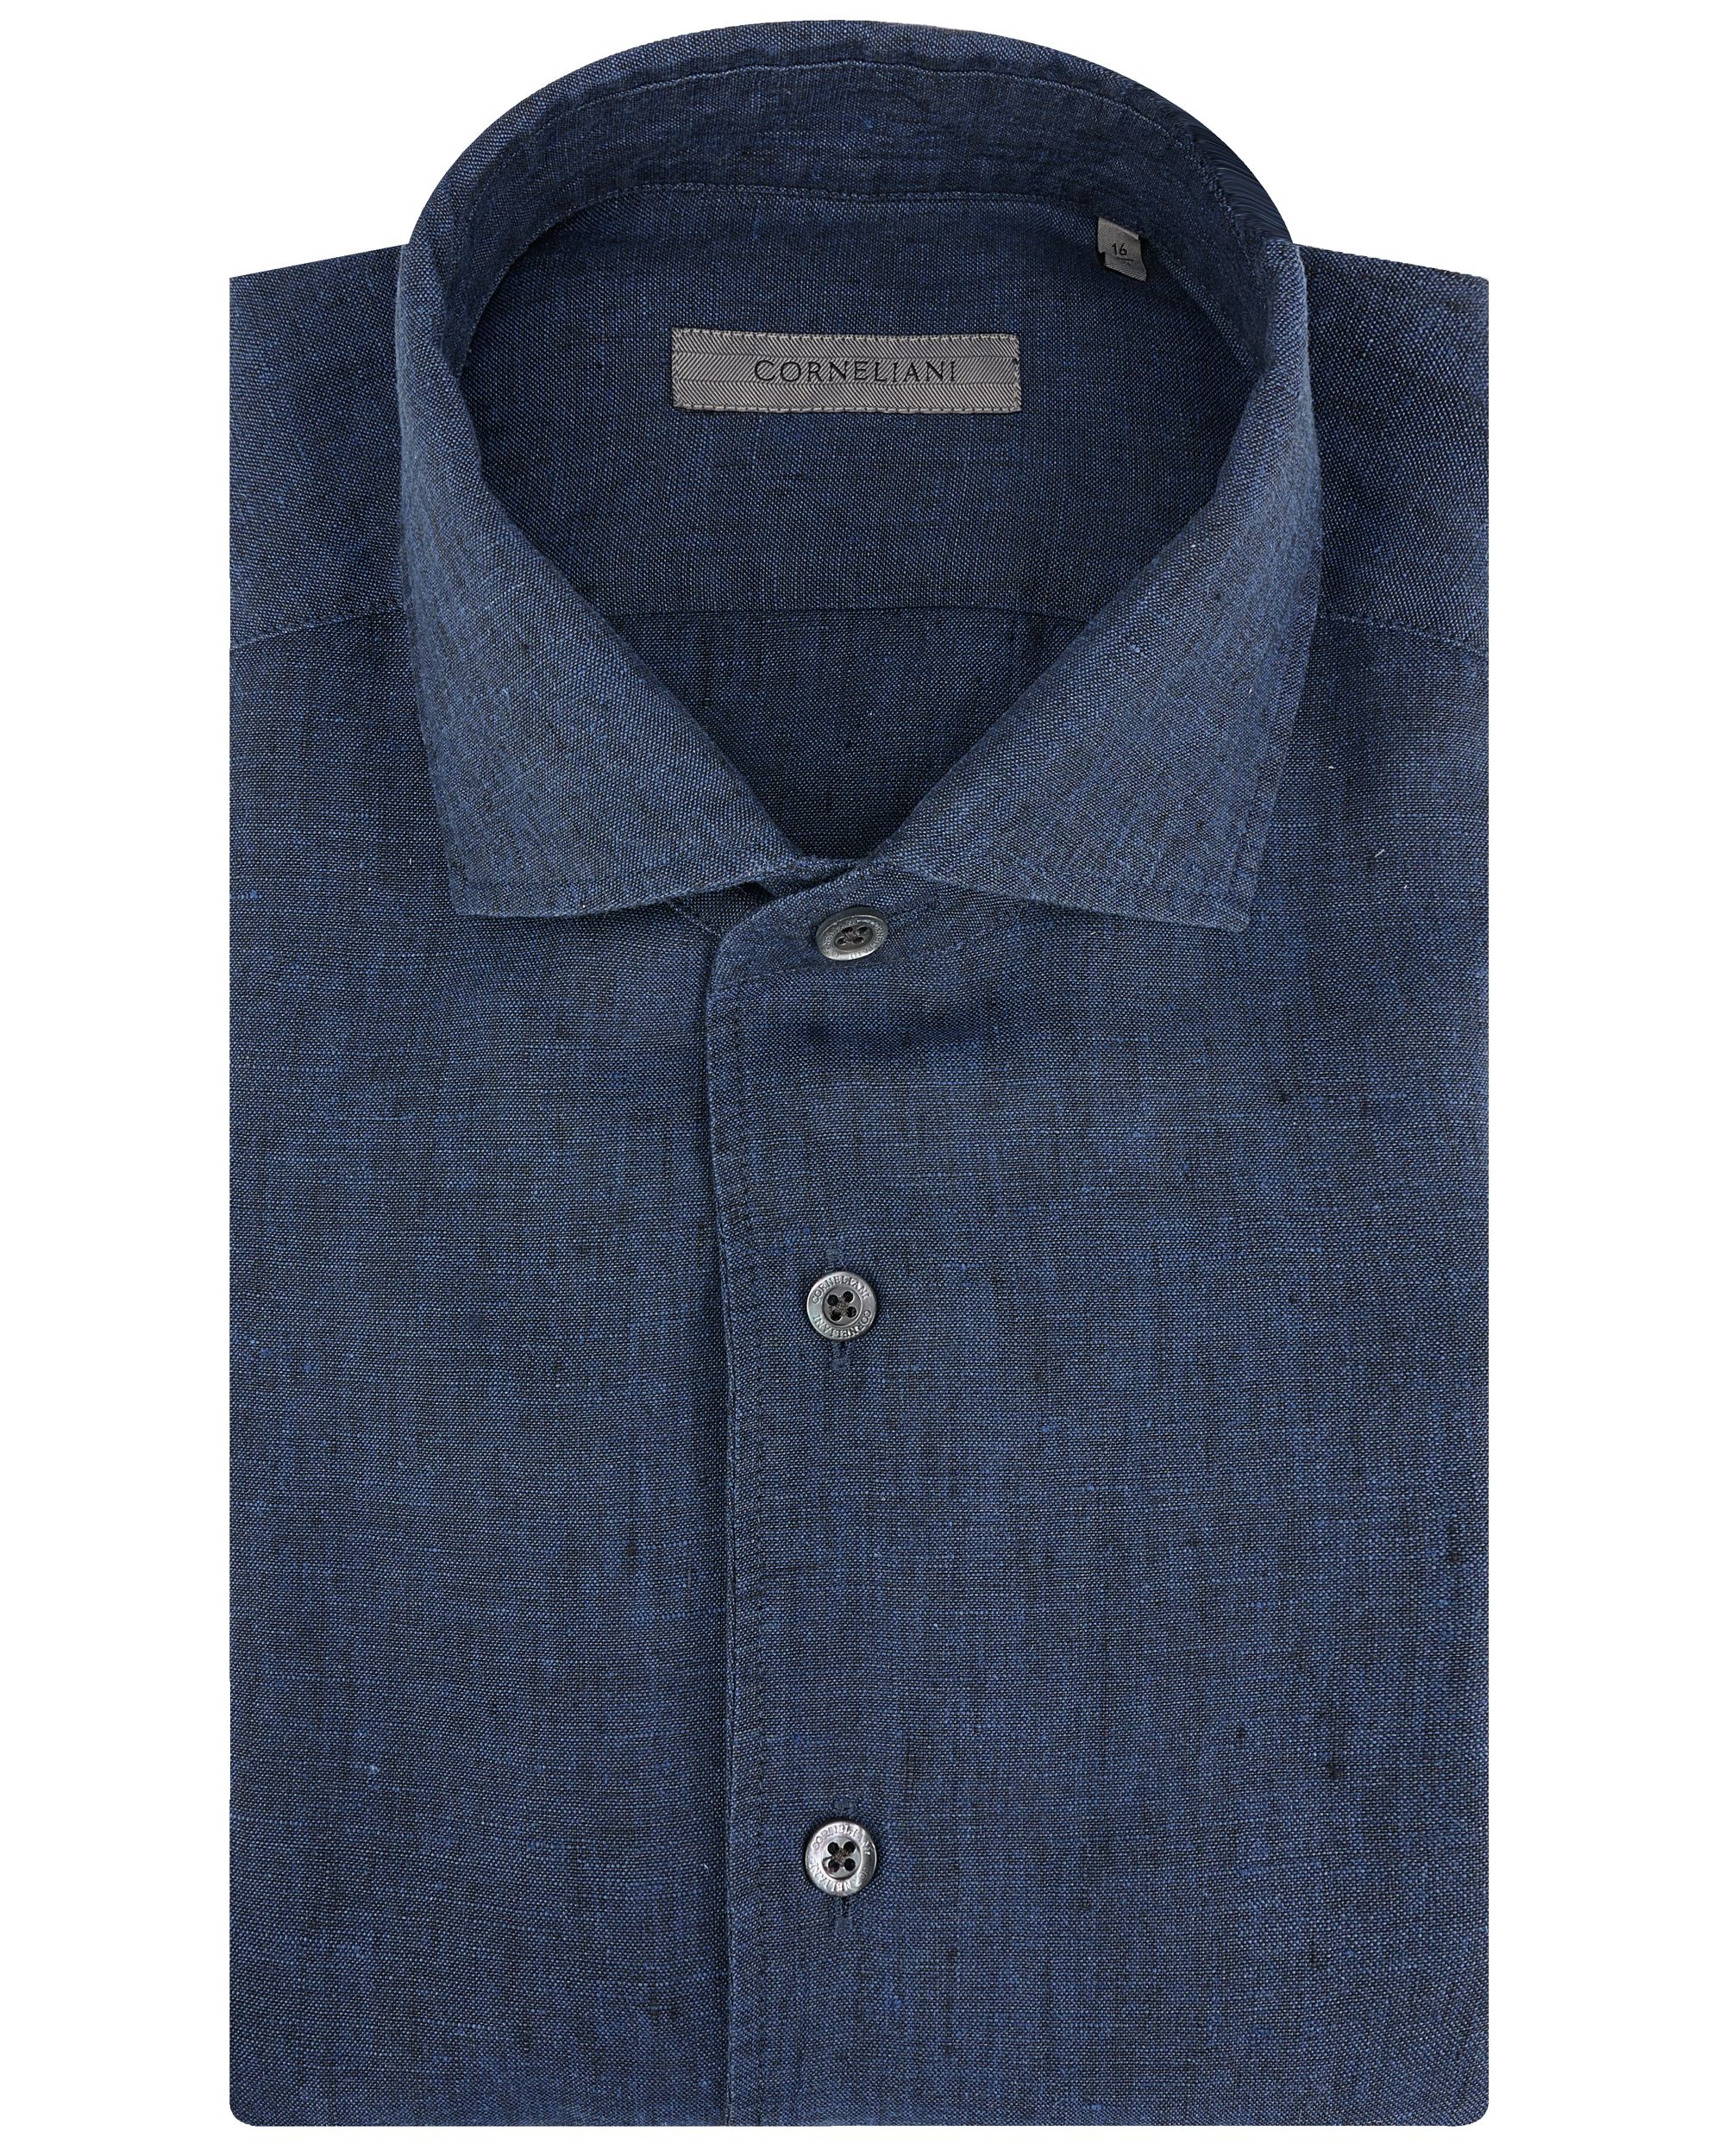 Corneliani Overhemd LM Blauw 091812-001-43